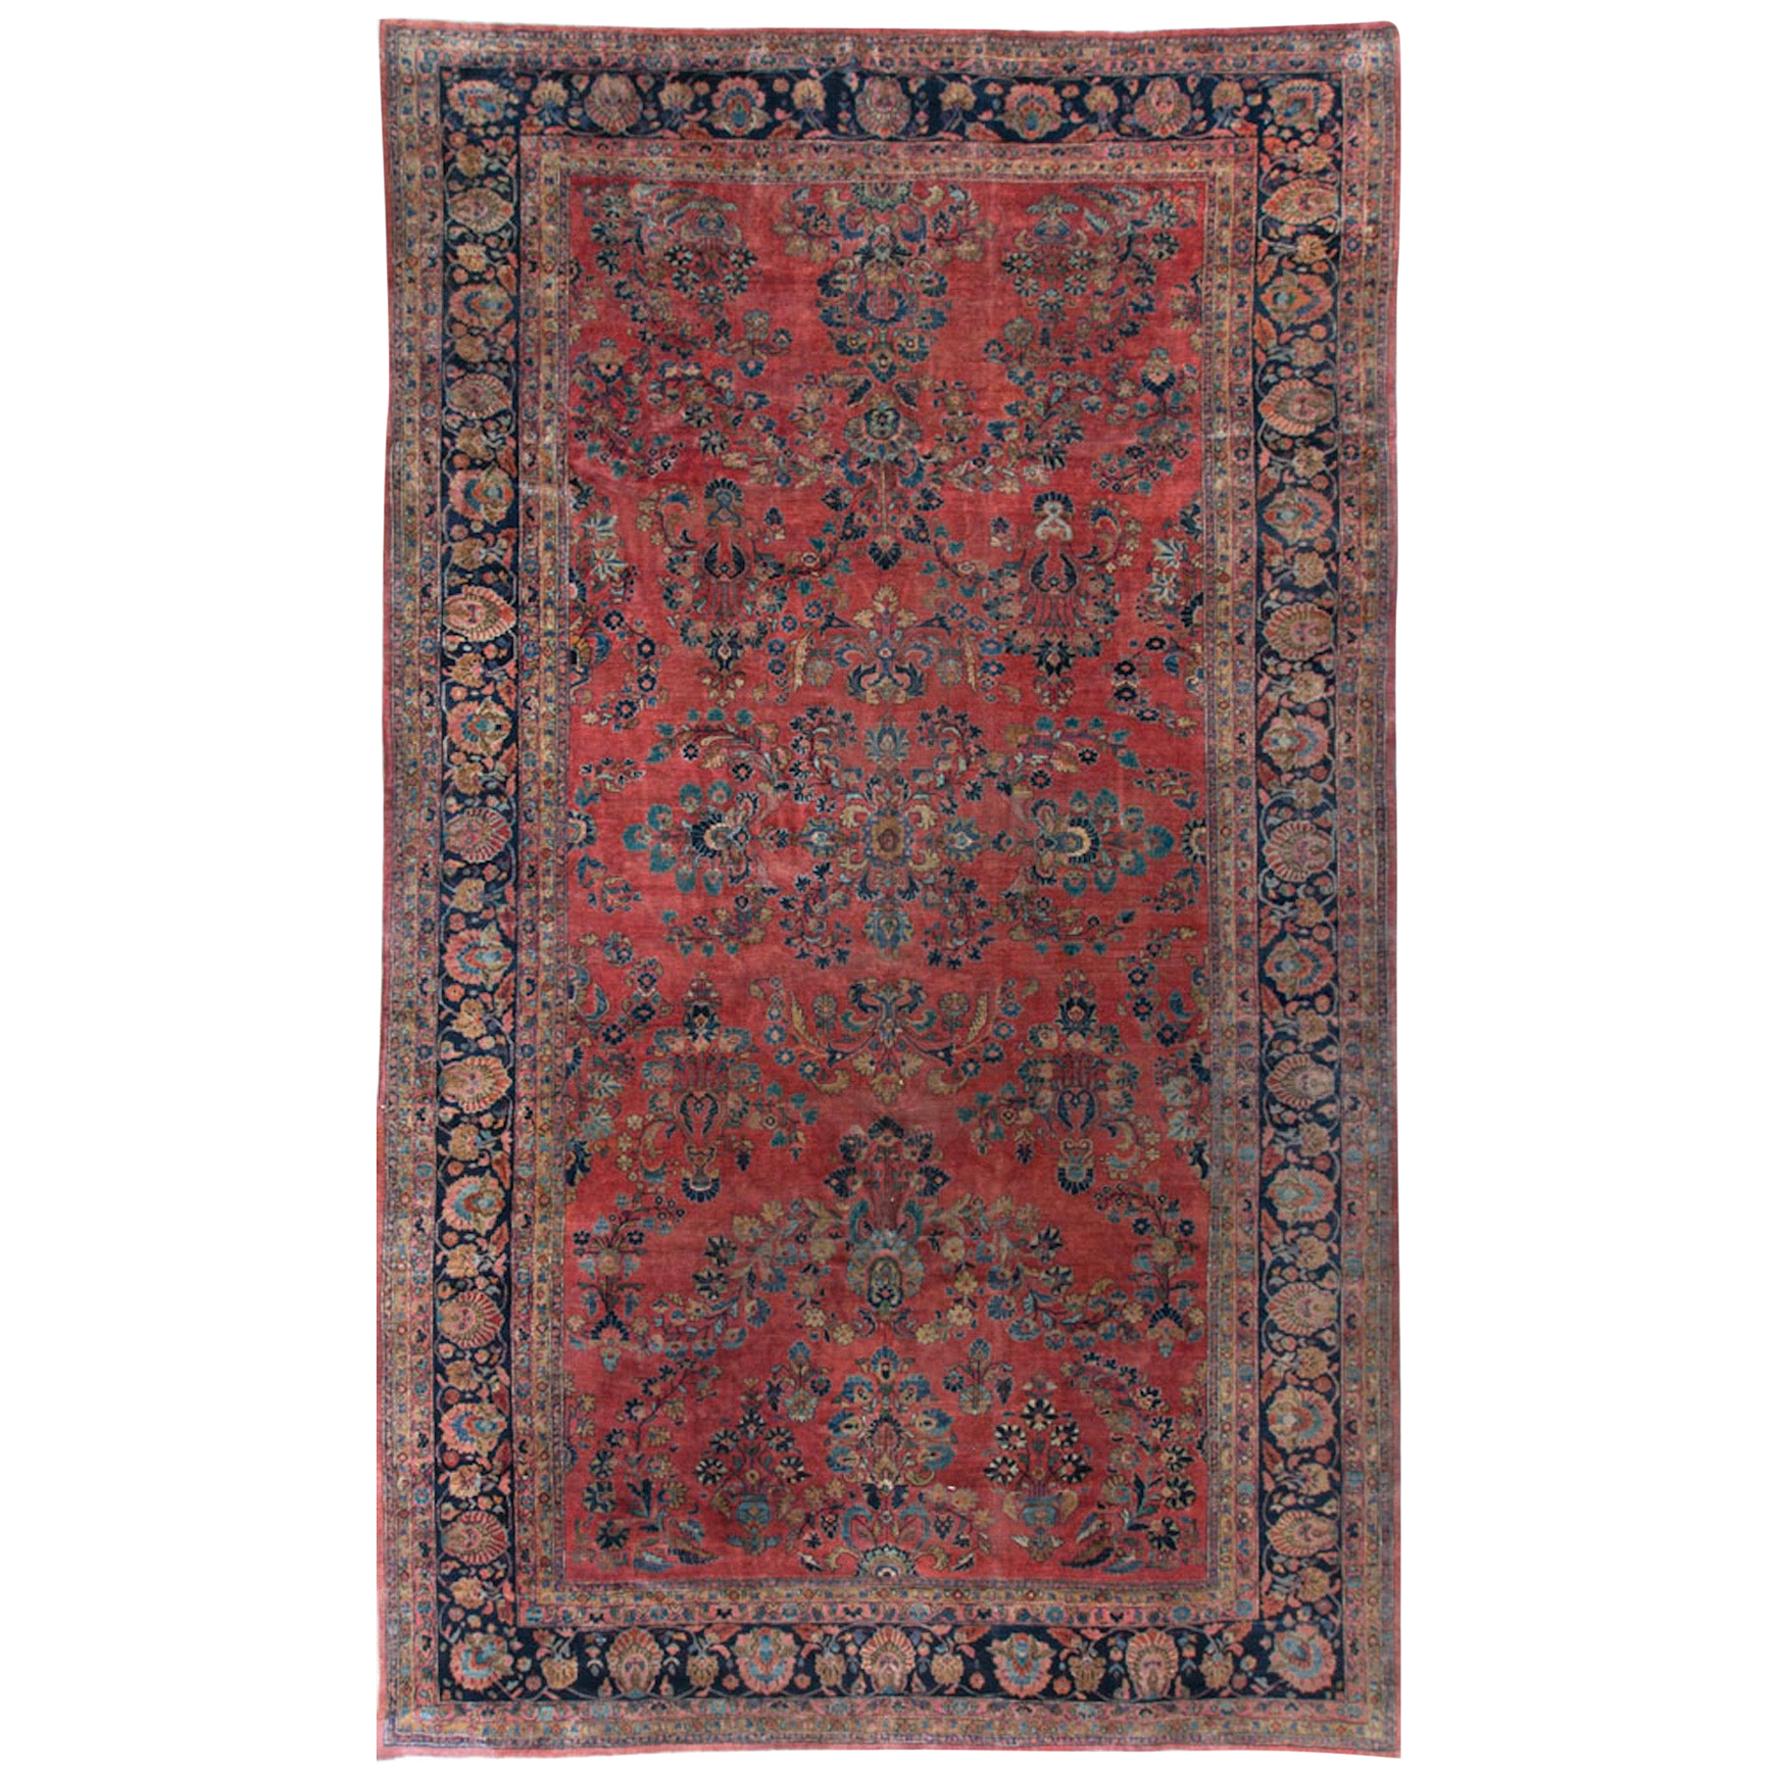 Antique Oversize Persian Sarouk Rug, circa 1900 10'5" x 17'6".